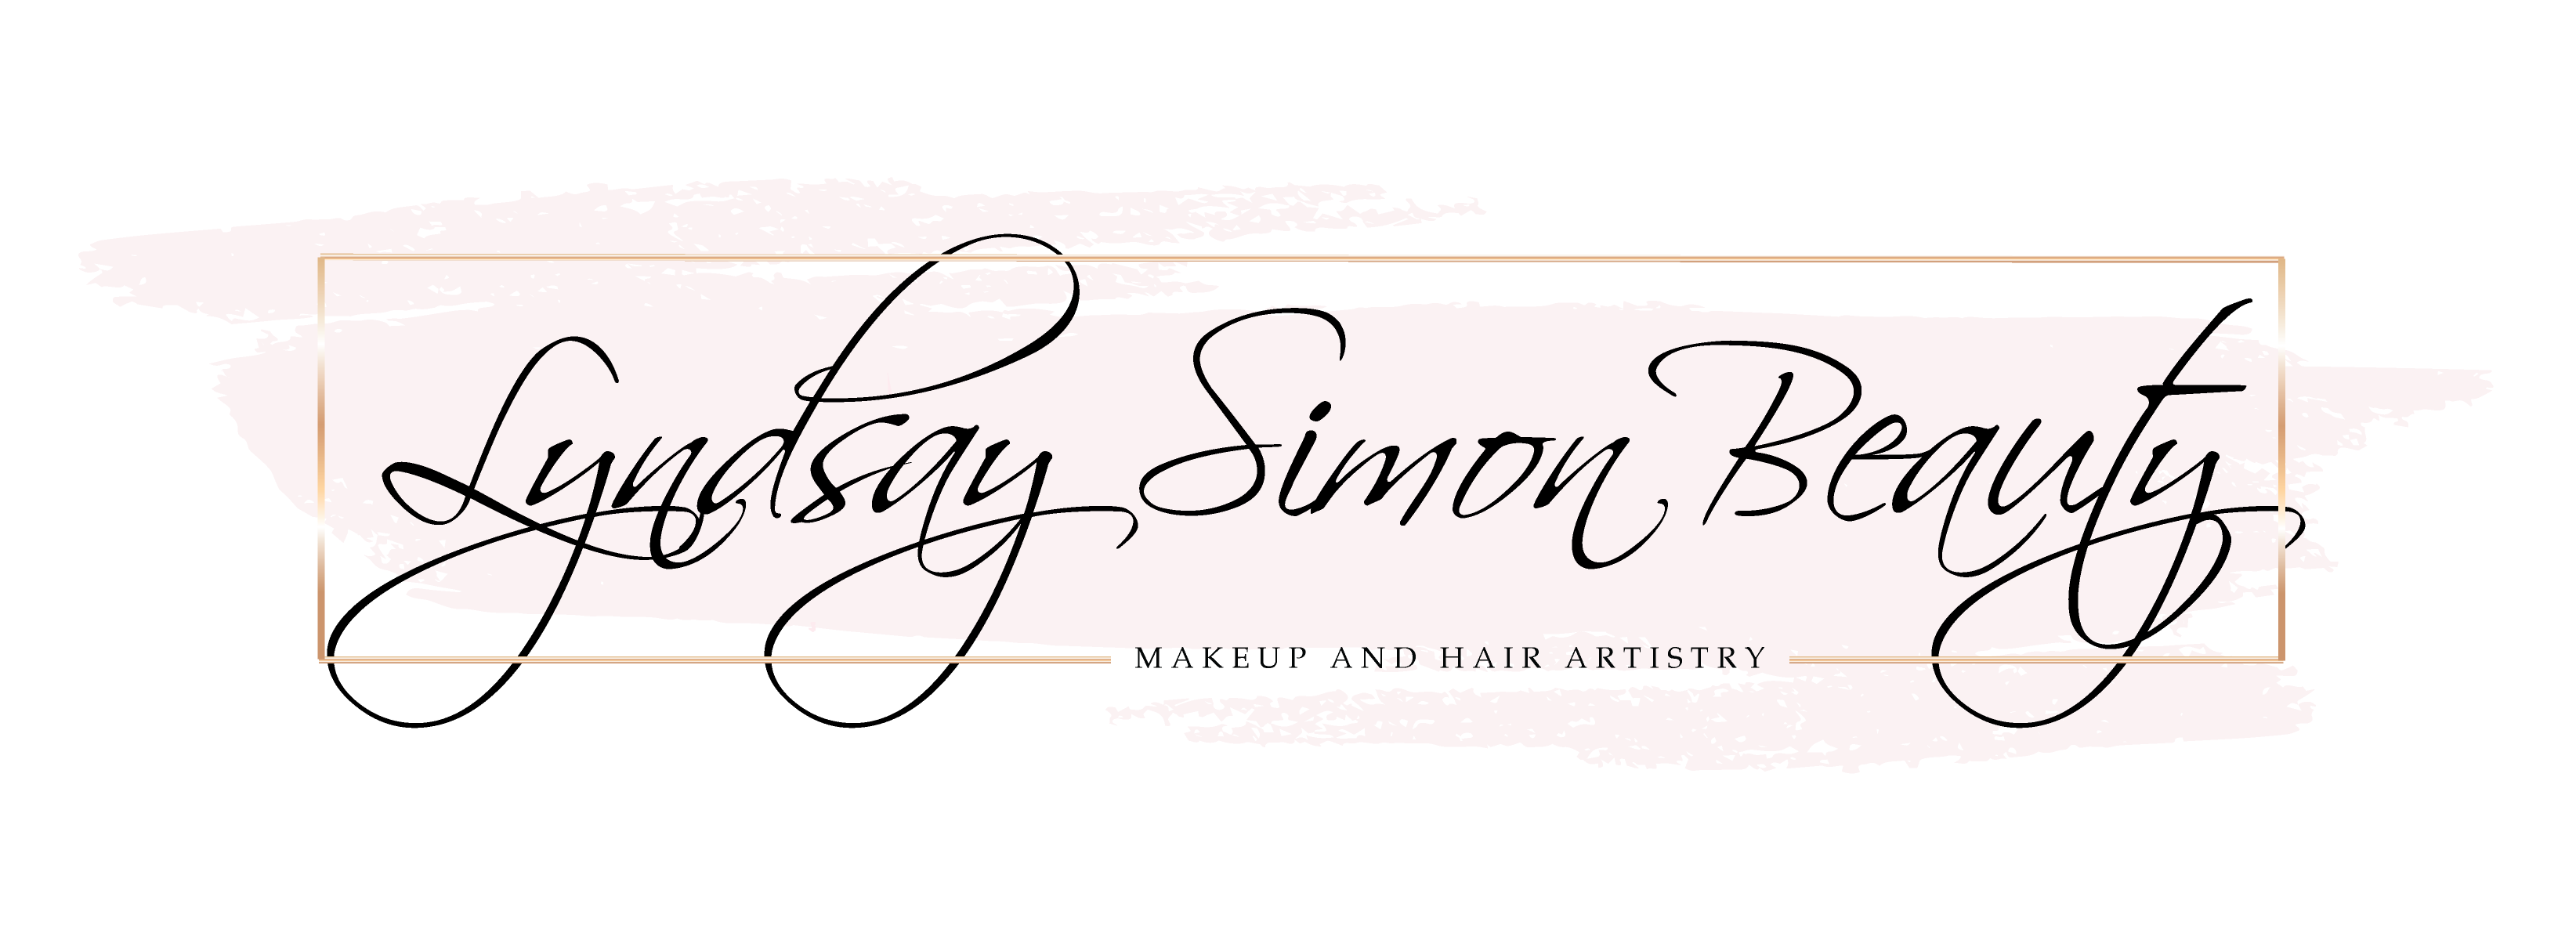 Lyndsay Simon Beauty